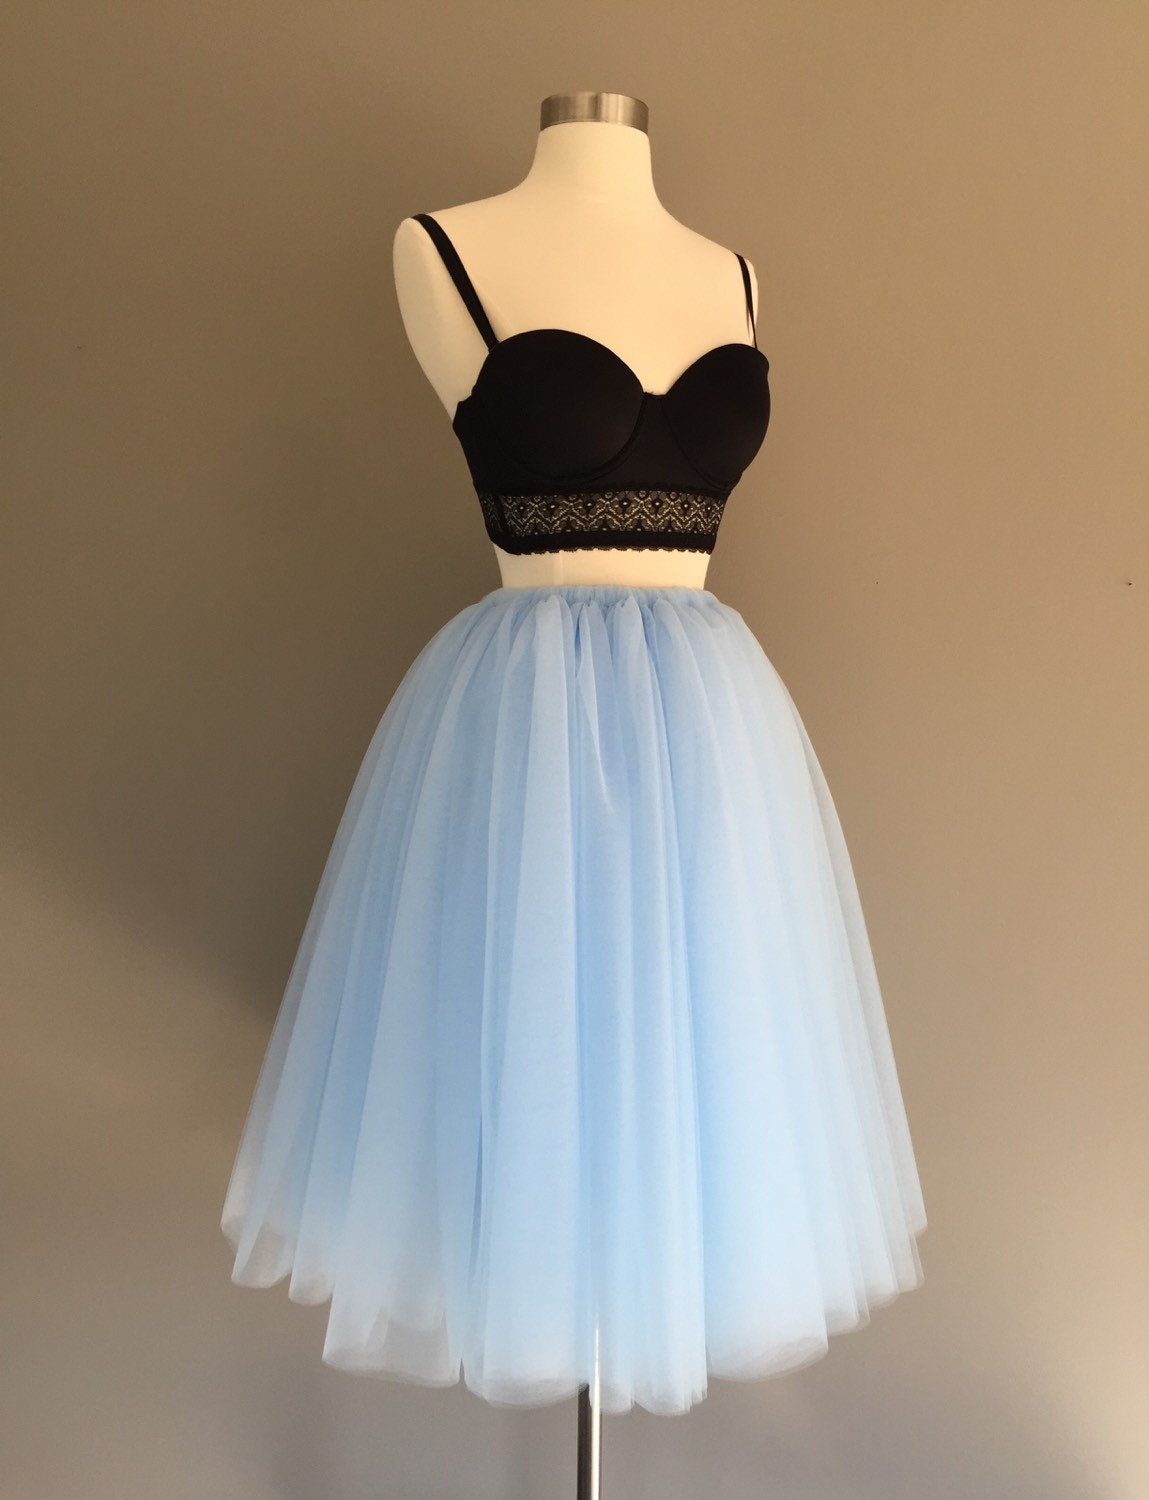 SKY BLUE Tulle Skirt Adult Tutu Bridesmaid Tulle Skirt - Etsy